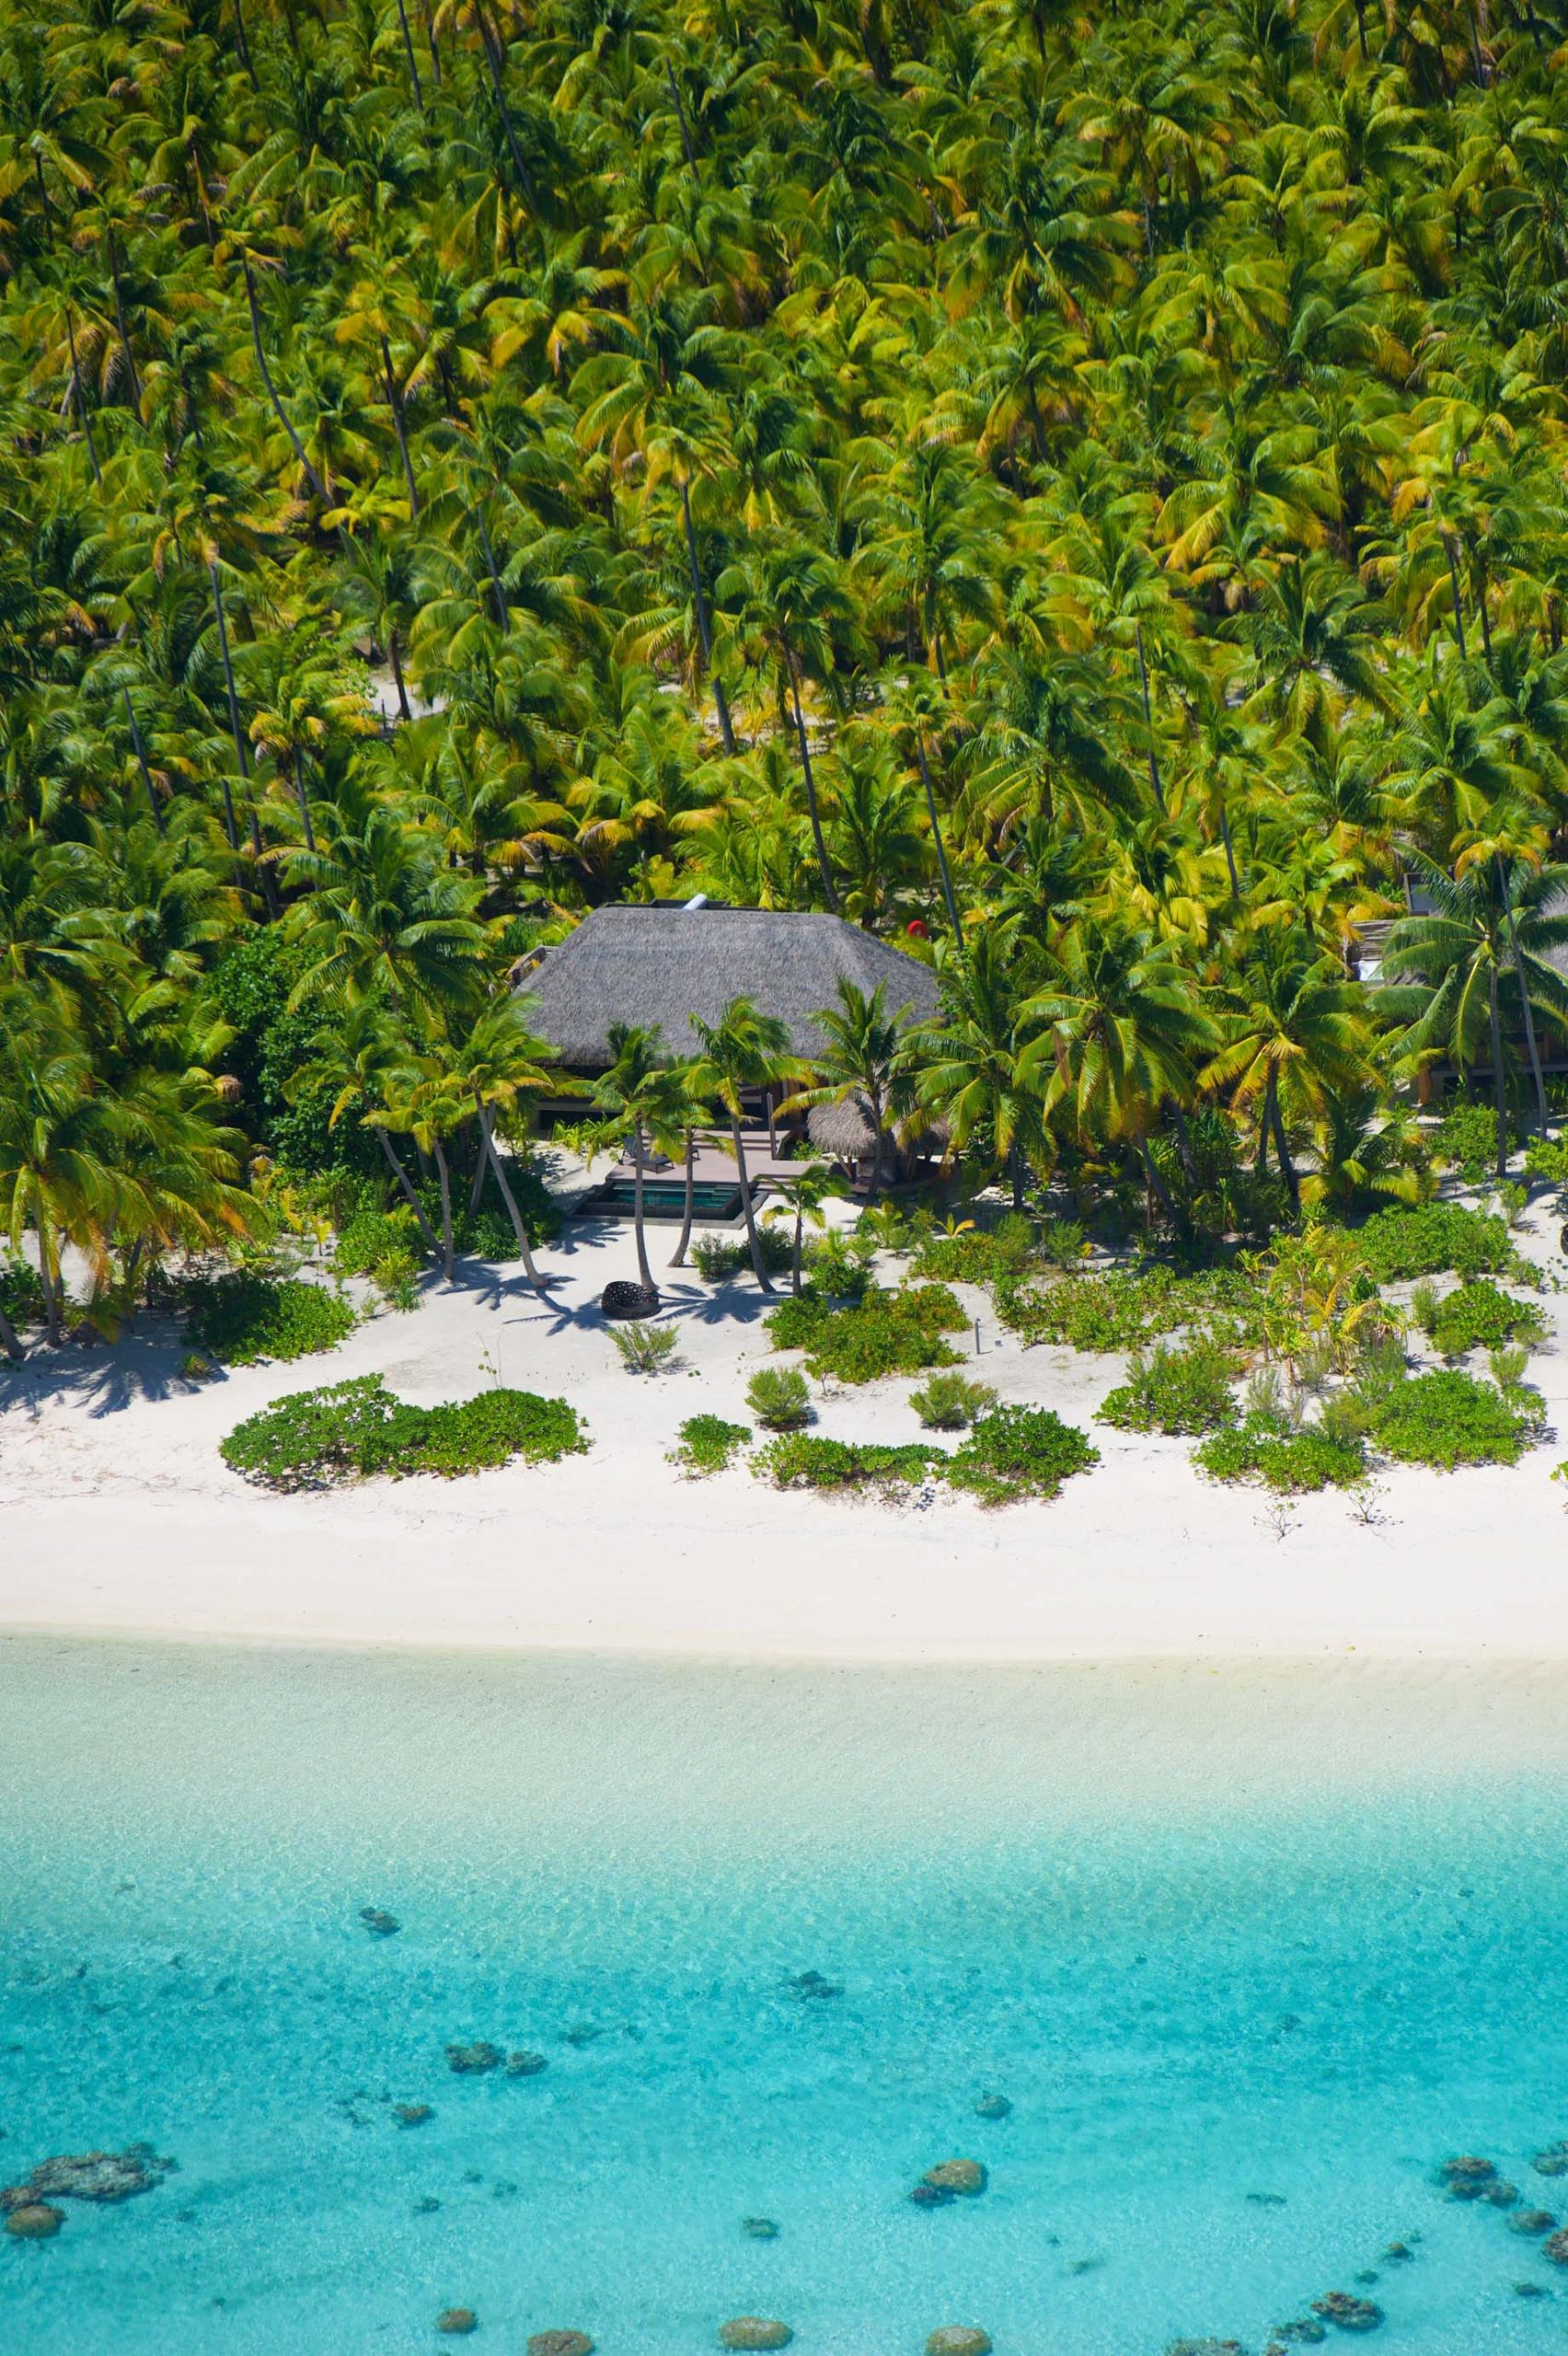 The Brando Resort - Tetiaroa Private Island, French Polynesia - Aerial Resort Villa View